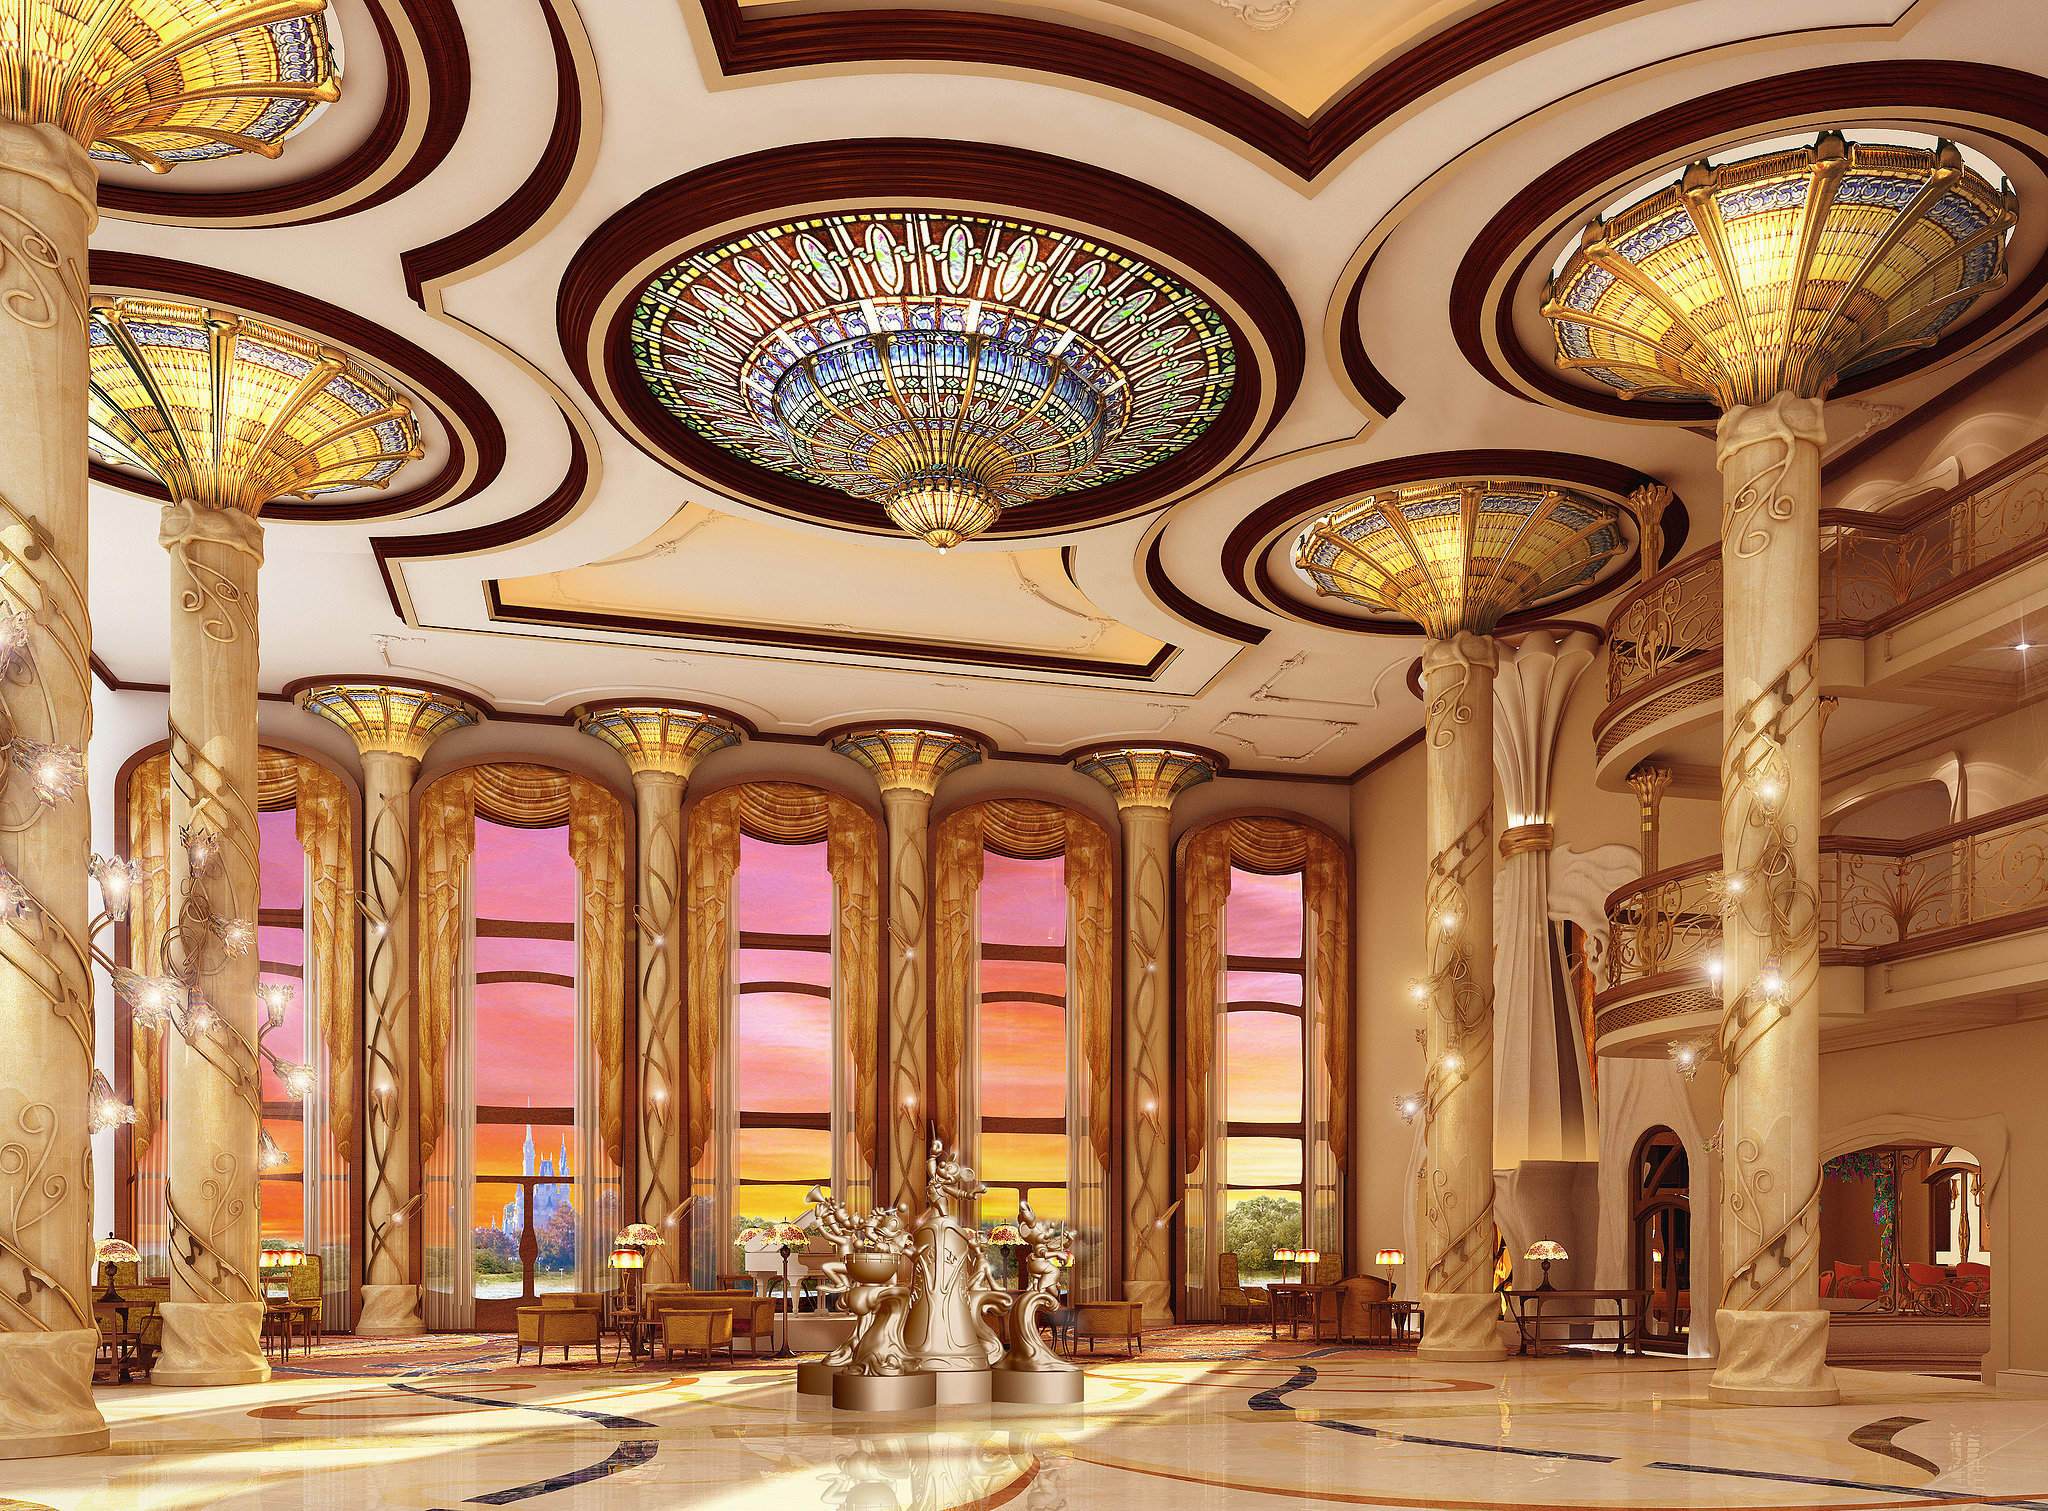 Shanghai-Disneyland-Hotel-Lobby-Rendering.jpg